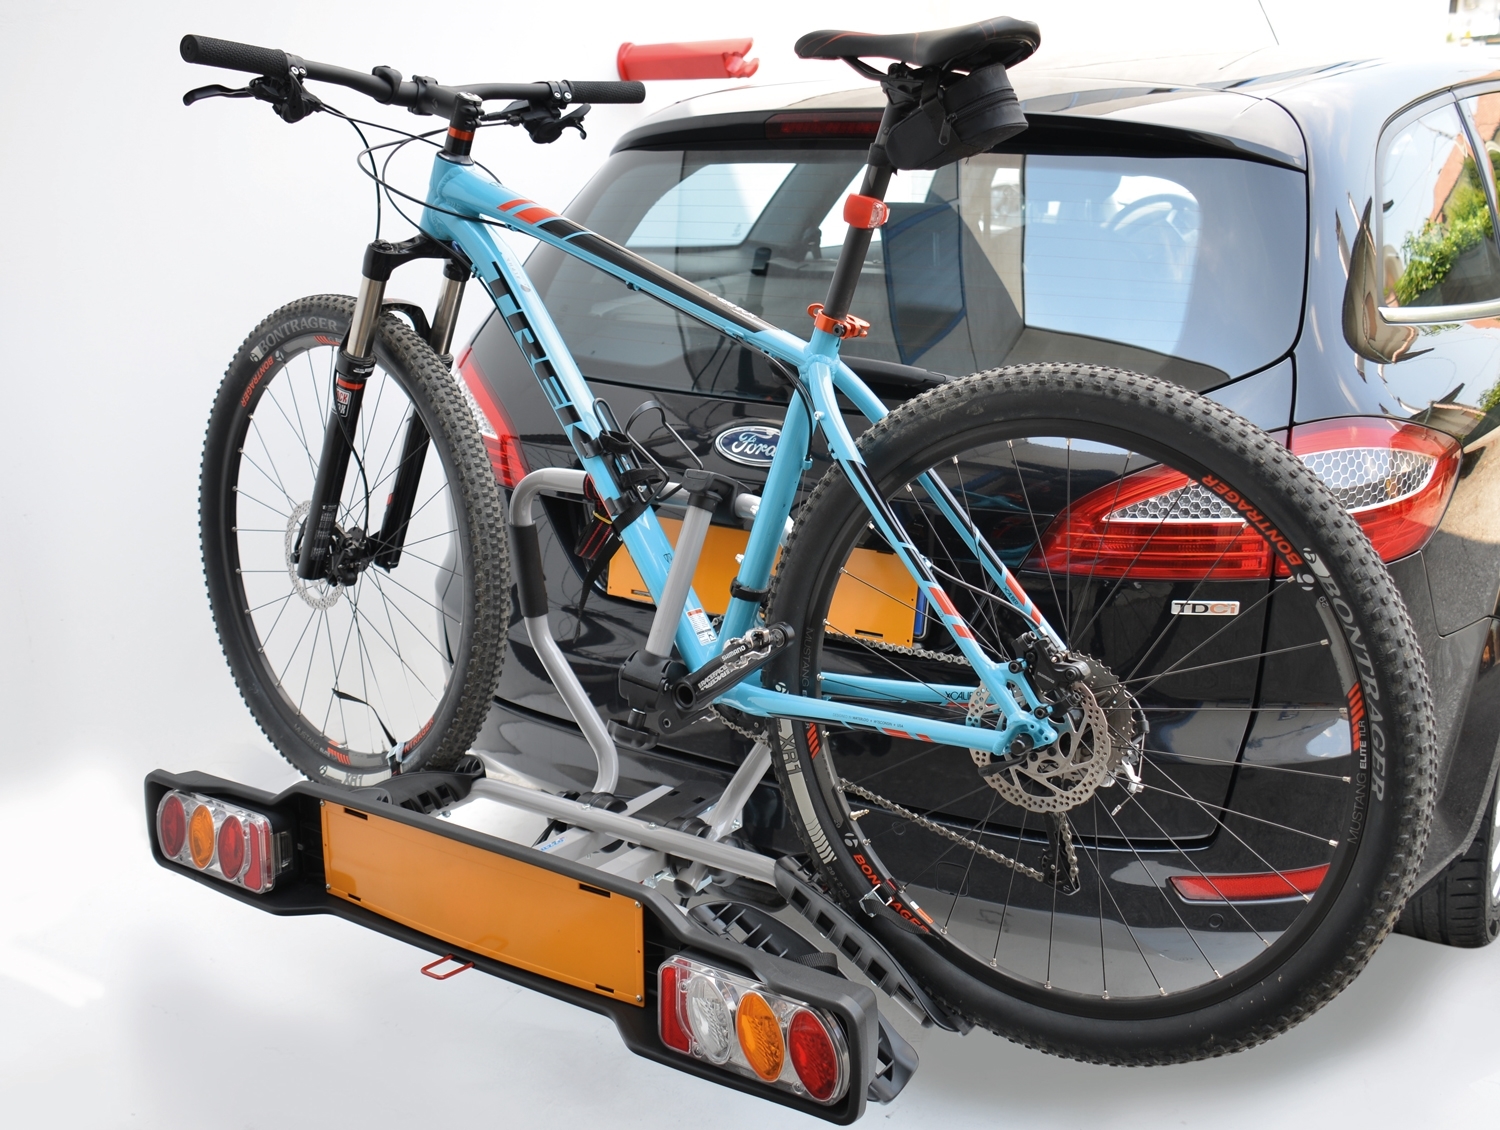 Фаркоп для велосипеда: Багажник для велосипедов на фаркоп — купить велокрепление на фаркоп в Москве по низкой цене